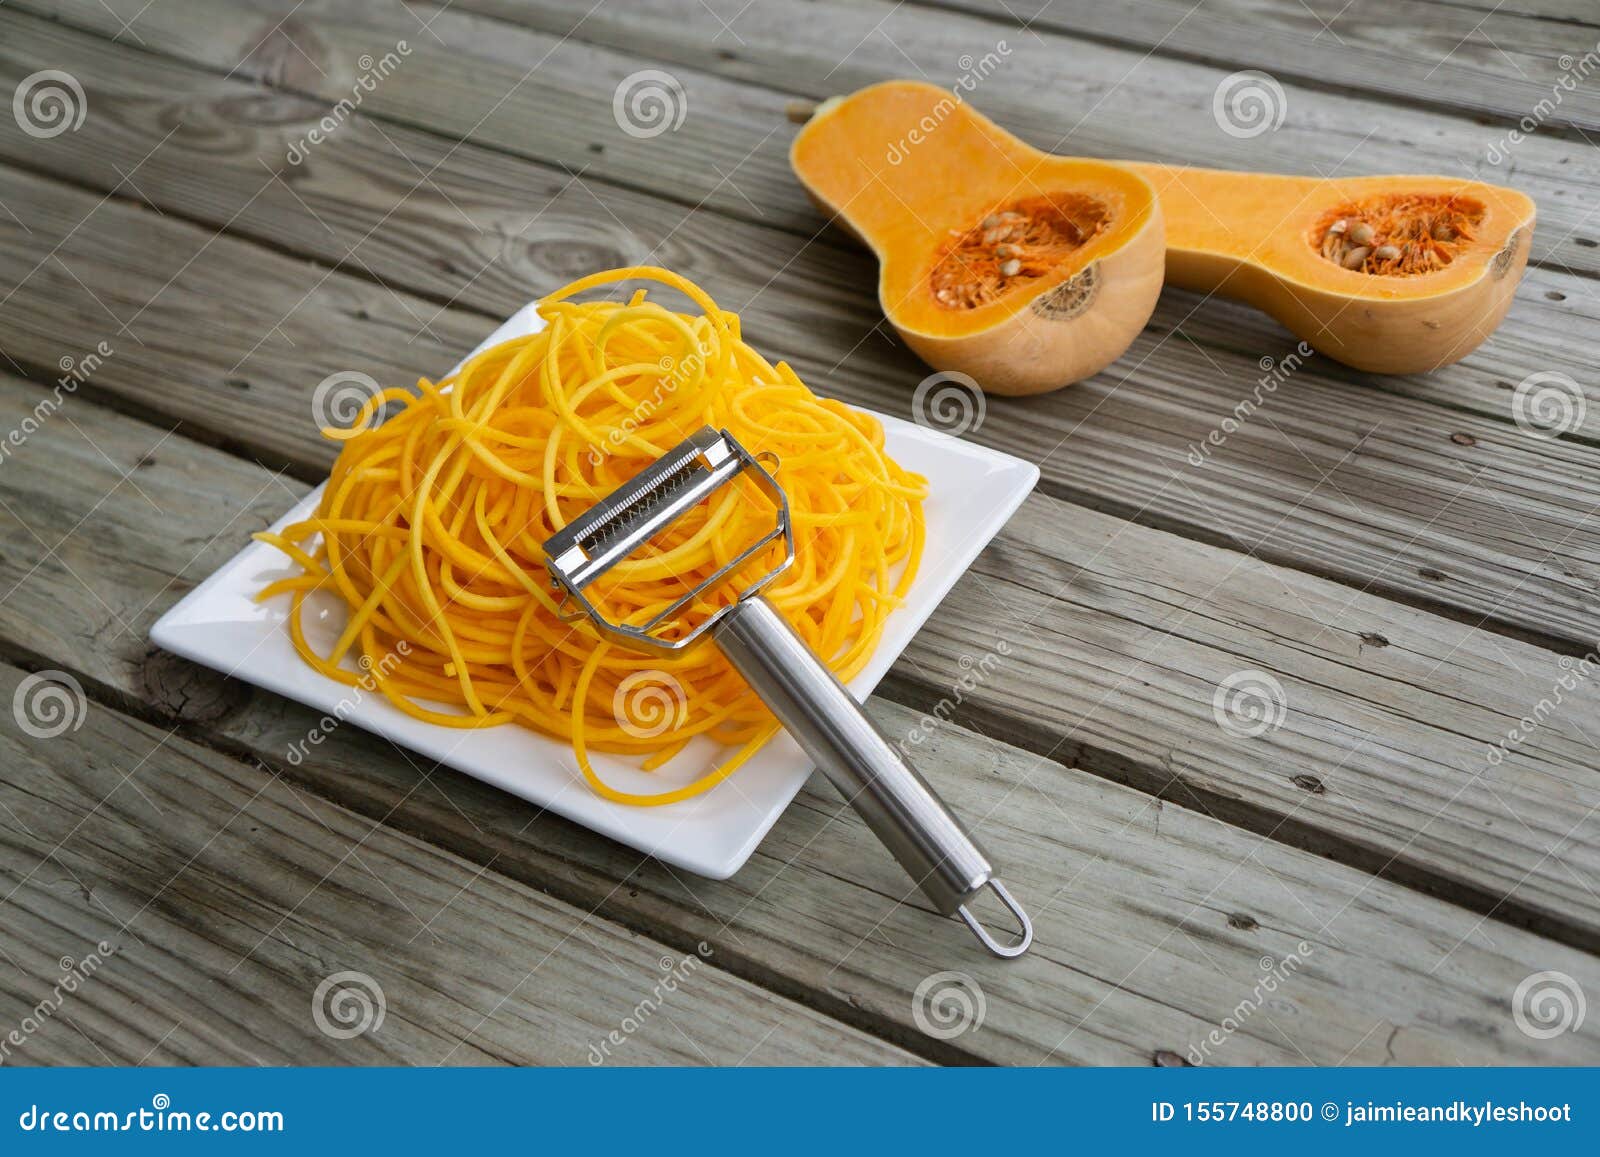 https://thumbs.dreamstime.com/z/freshly-peeled-butternut-squash-vegetable-noodles-via-julienne-peeler-health-food-trend-low-carb-gluten-free-vegan-keto-155748800.jpg